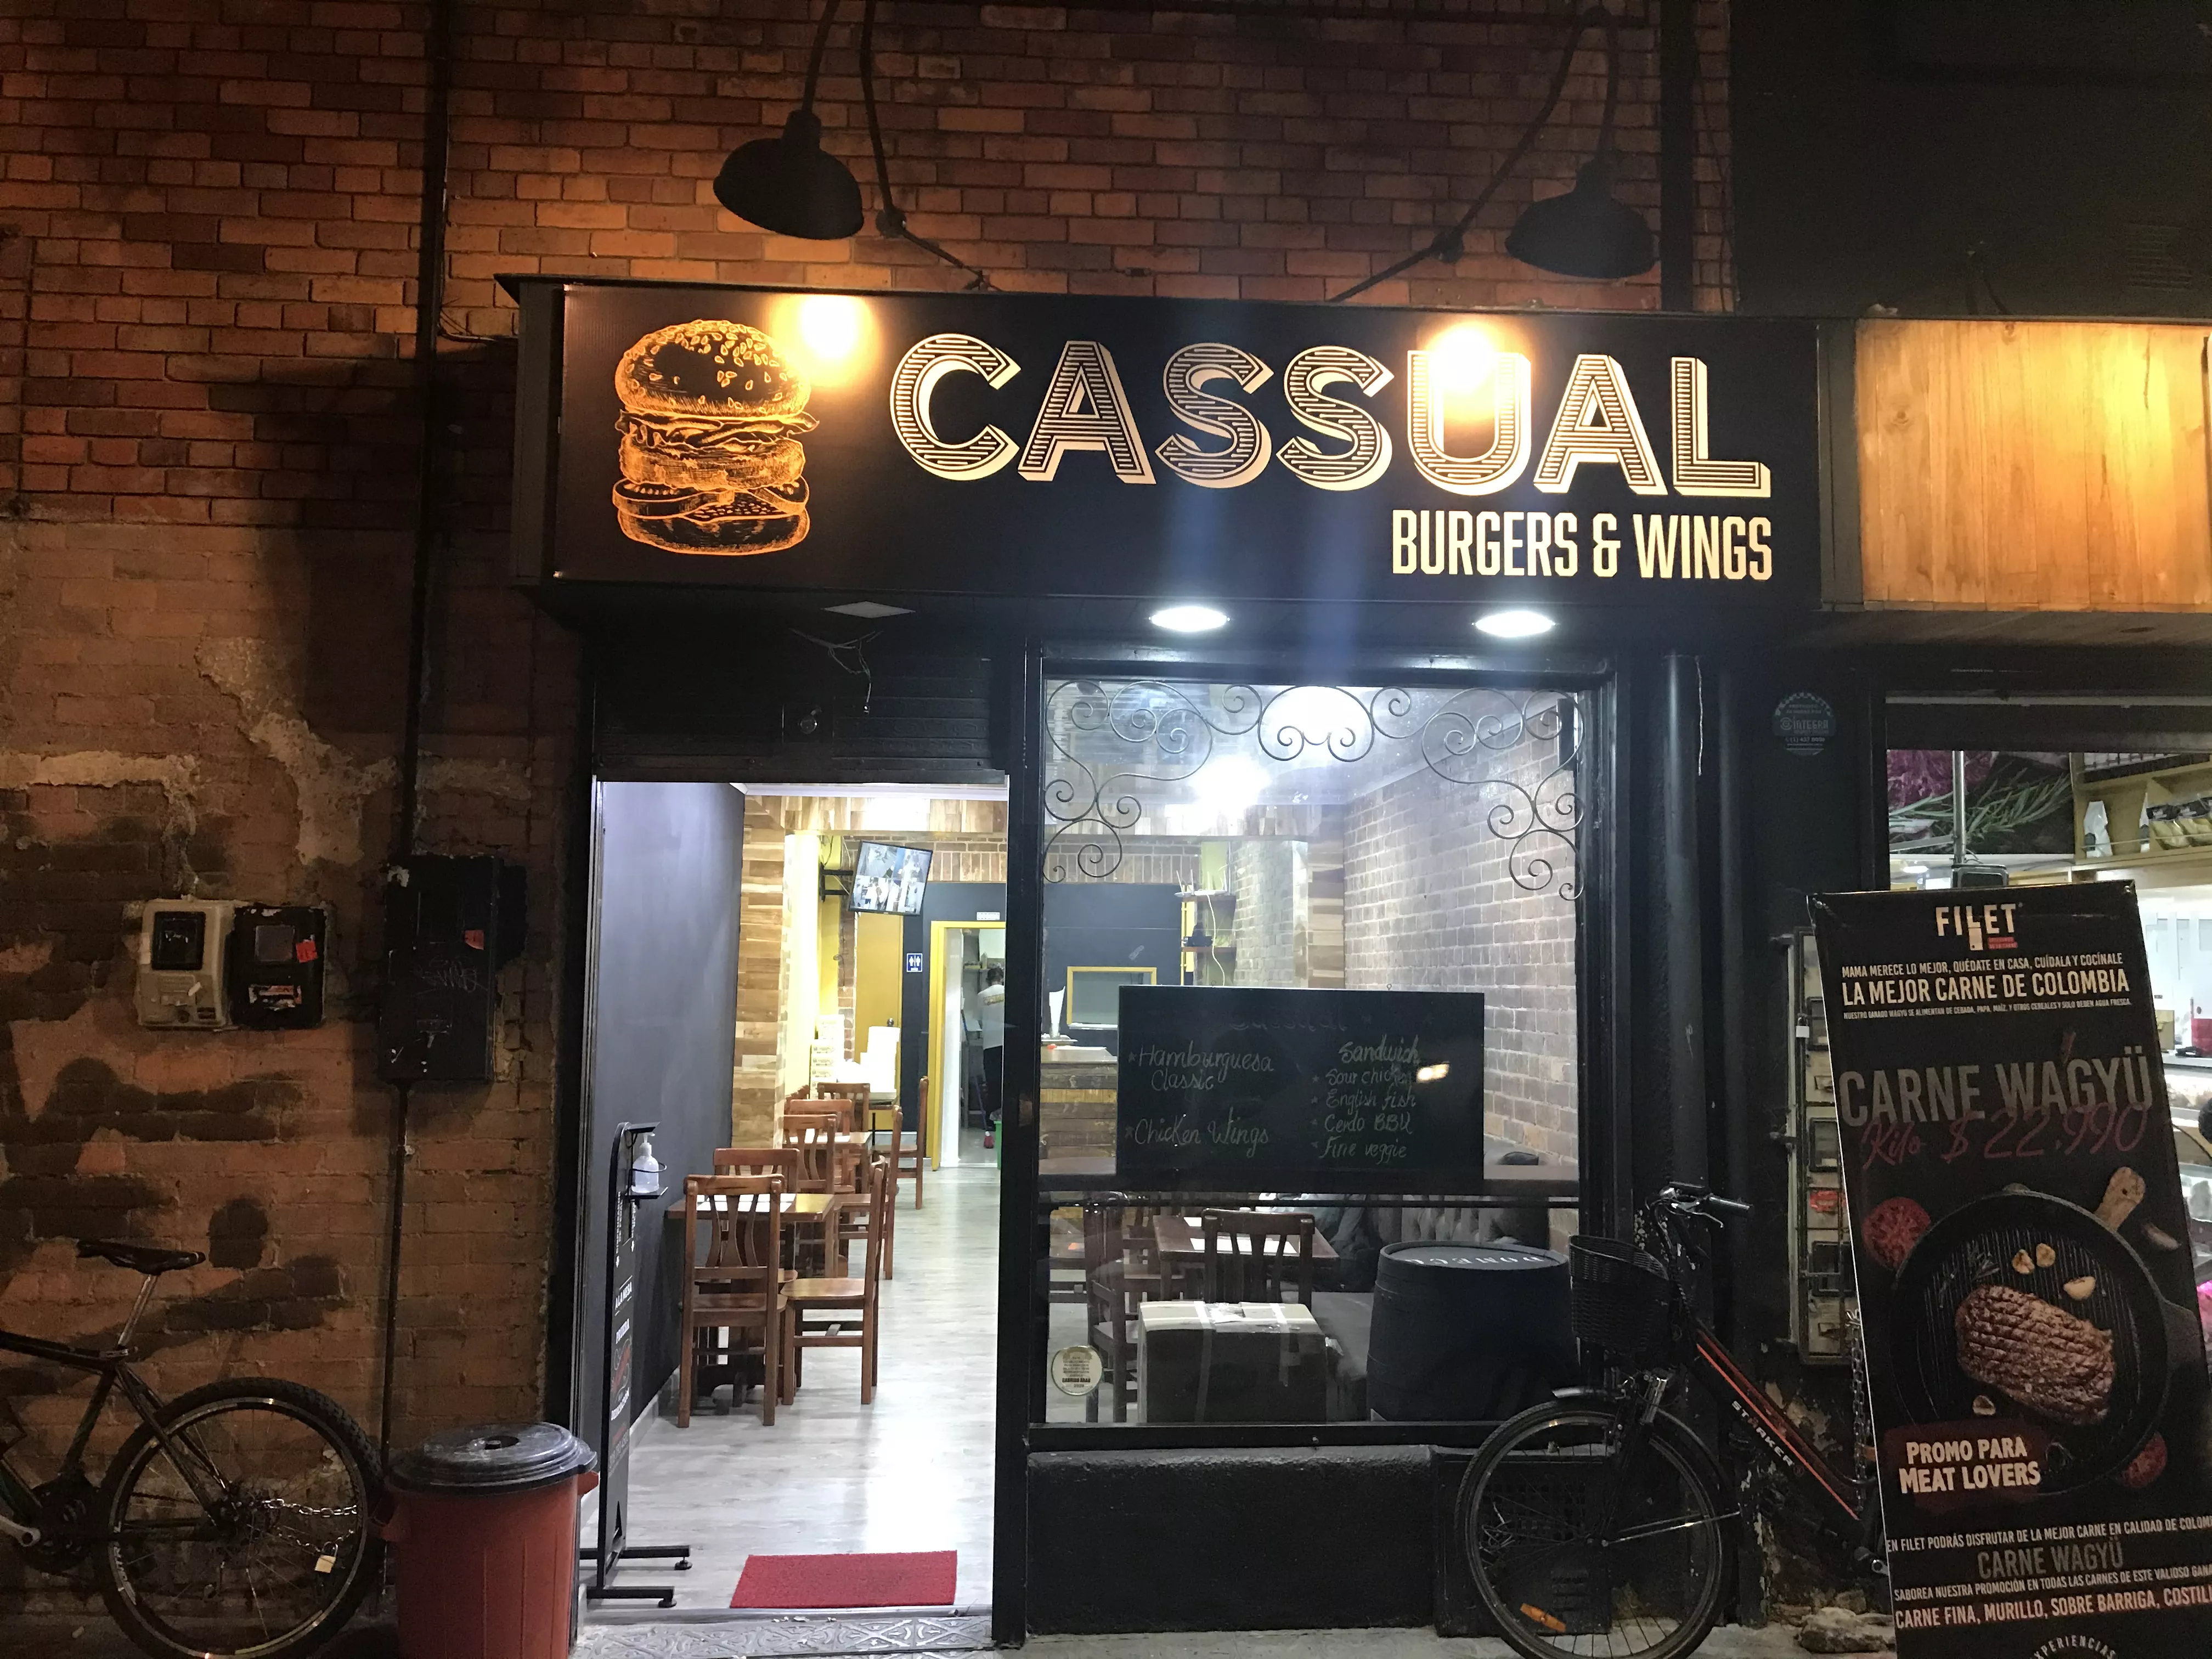 Cassual Burgers & Wings